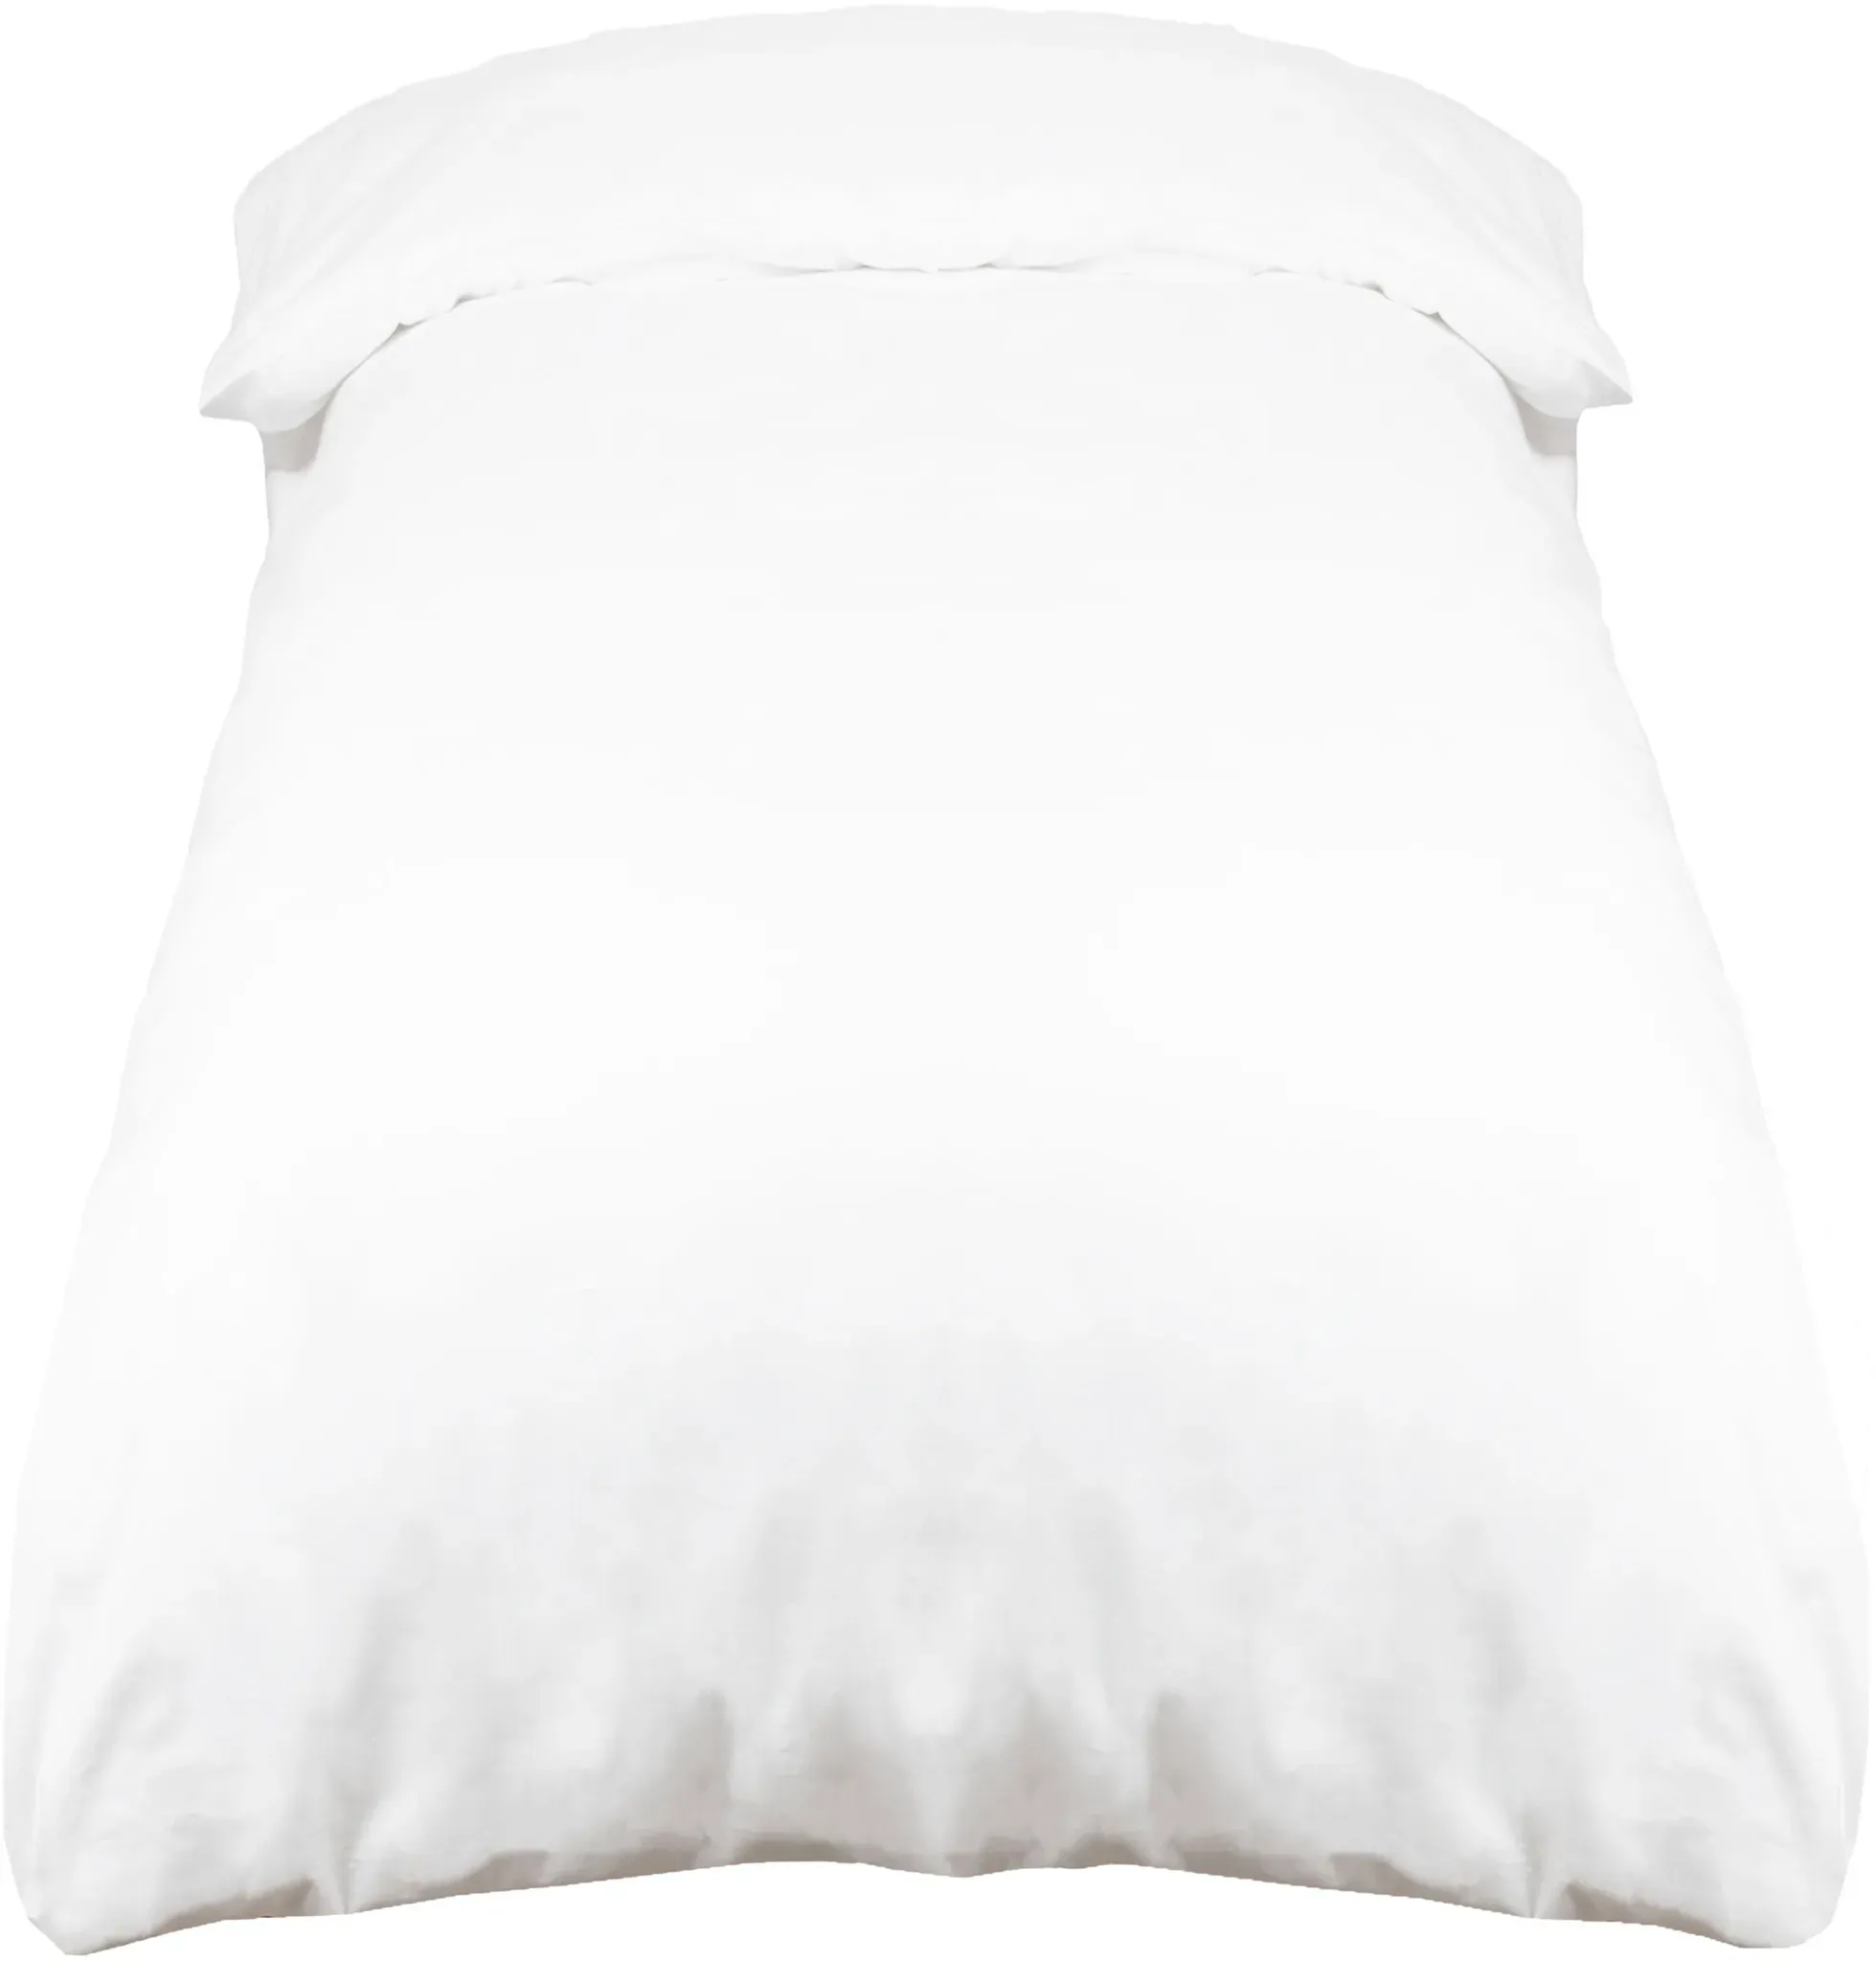 Deckenbezug 240x220 cm Baumwolle weiß